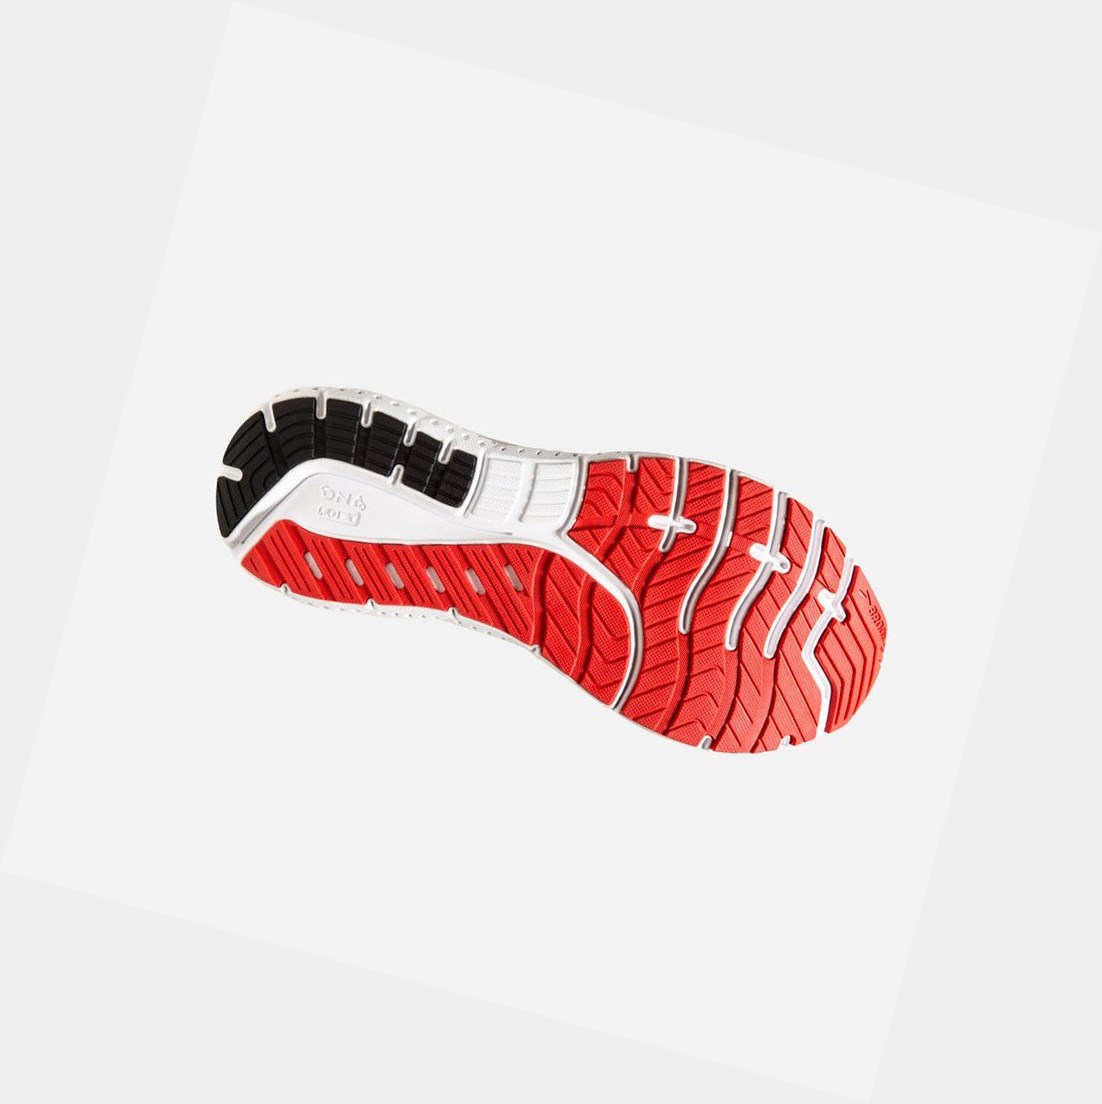 Brooks Transcend 7 Men's Road Running Shoes Mazarine / Black / Red | SVPK-90617